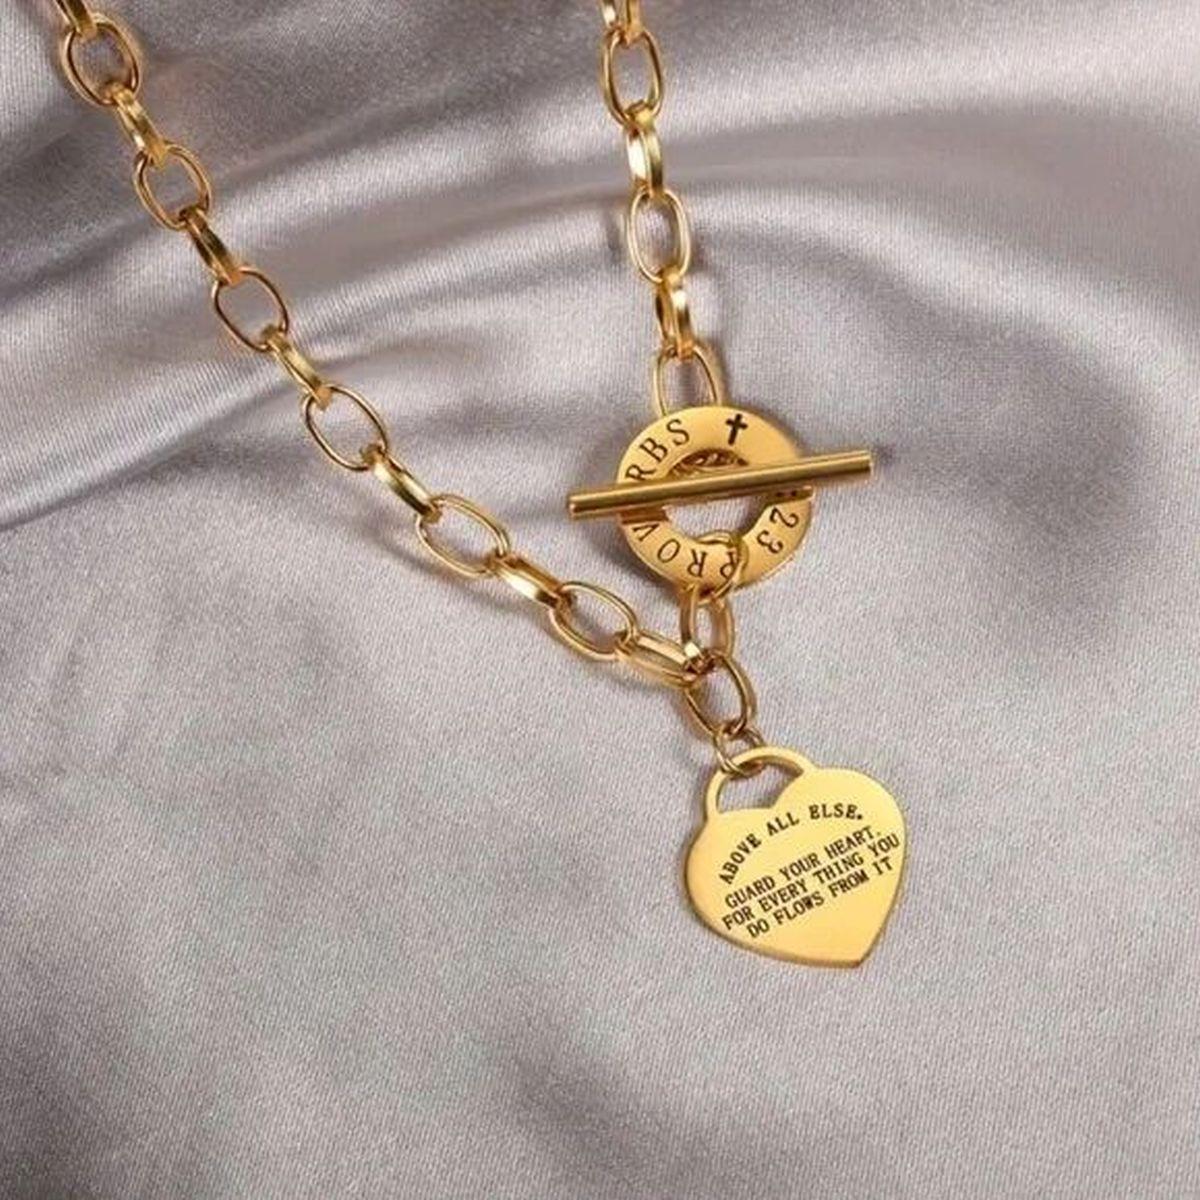 Einfach schön! Vintage 18K Gold plattiert Heart Lock Anhänger Toggle Link Halskette. Eingeschrieben: Vor allem anderen hüte dein Herz, denn alles, was du tust, kommt von ihm! Die Halskette ist ca. 18